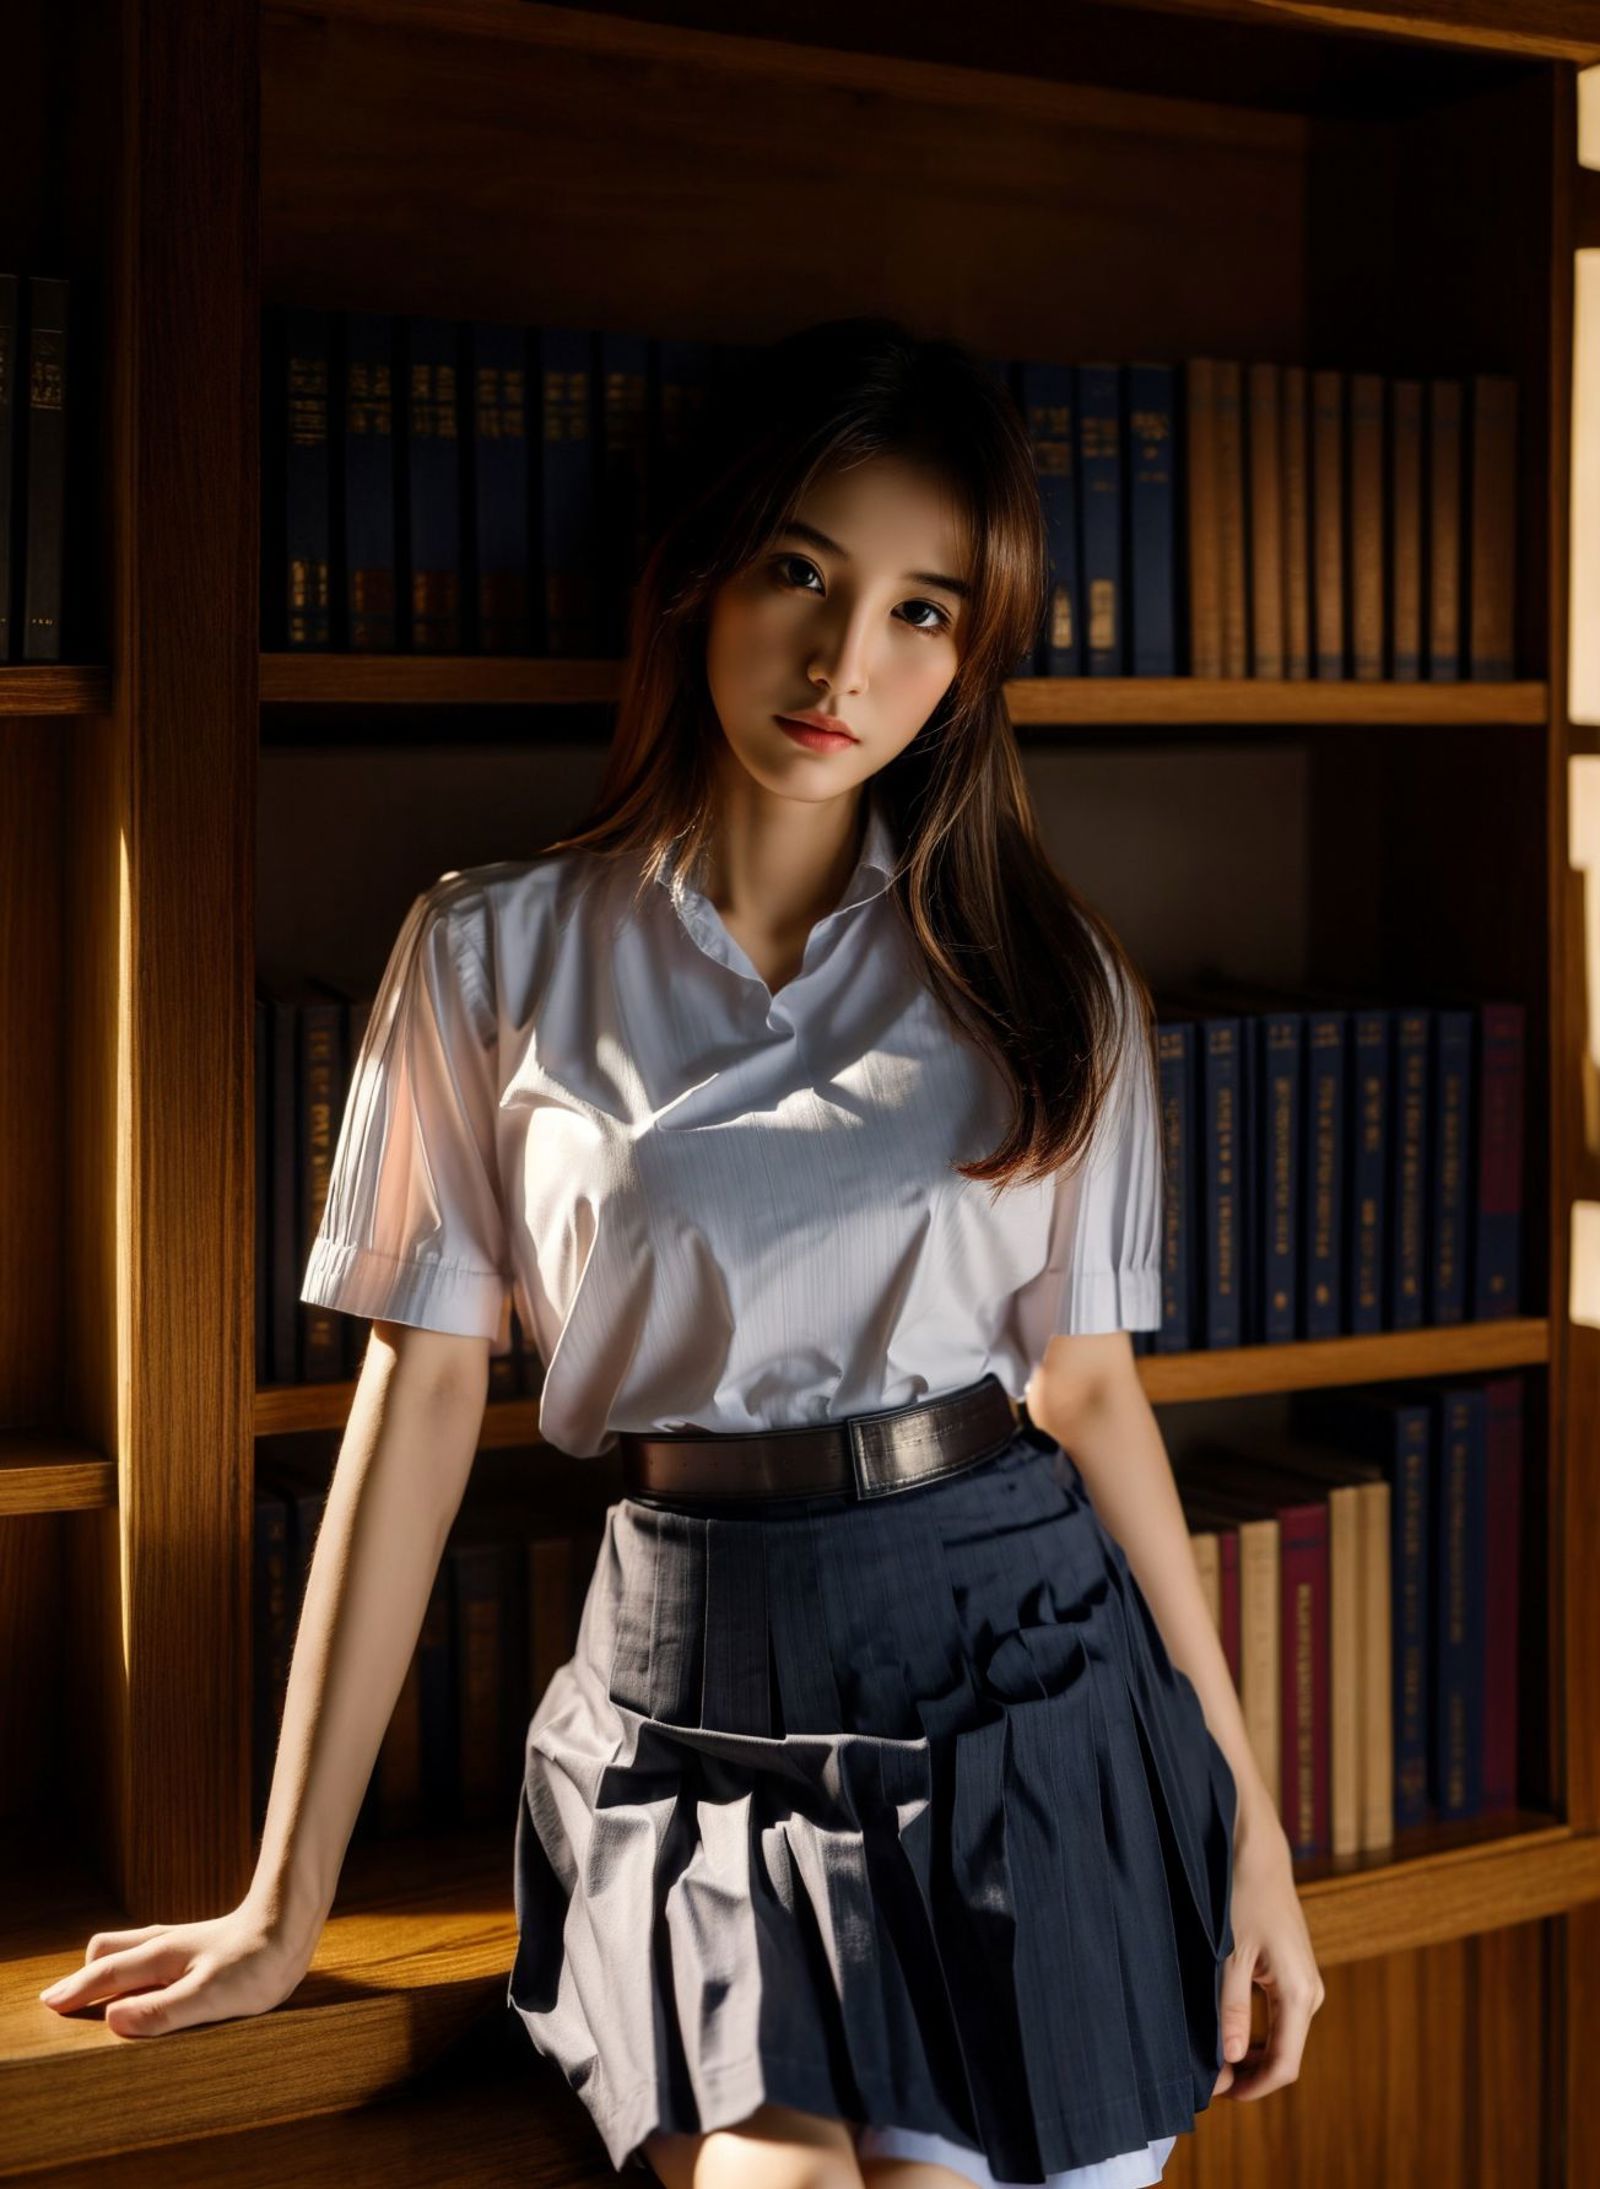 Thai High school uniform image by LYLA